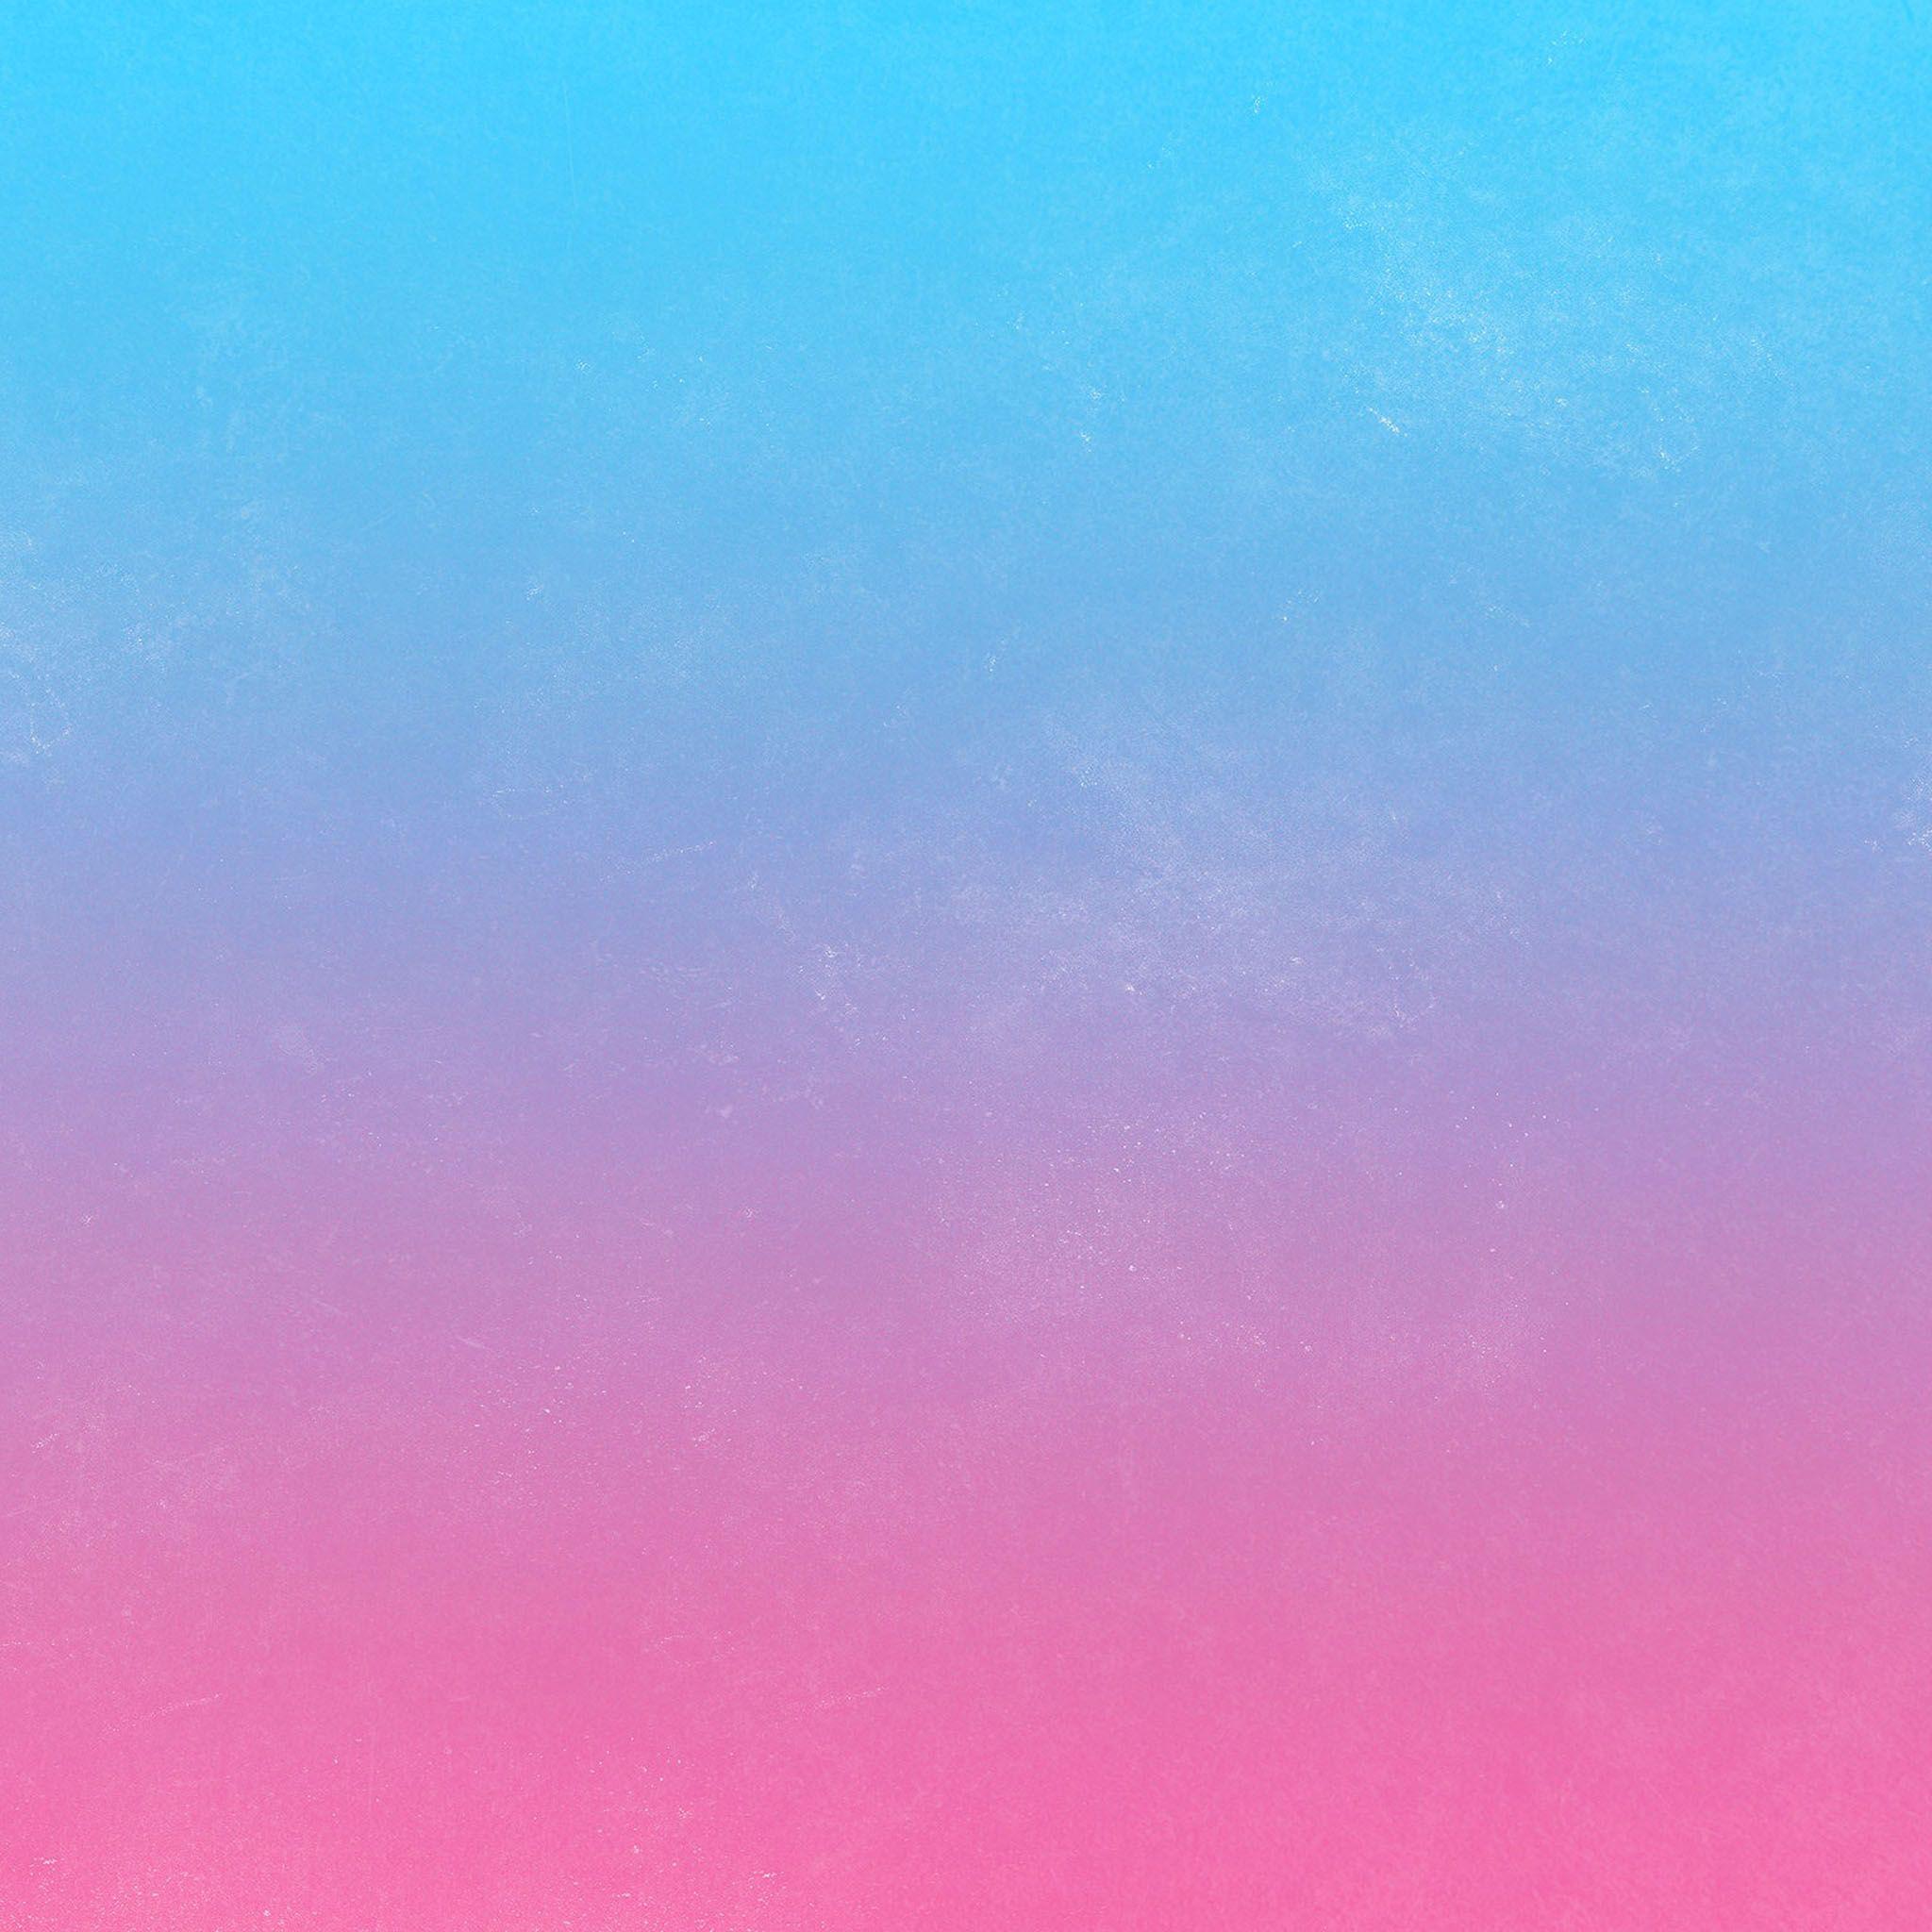 Blue and pink wallpapers hay blue and pink backgrounds là hai lựa chọn tuyệt vời cho ai yêu thích sự hòa quyện giữa hai màu sắc tinh tế và nam tính. Hình ảnh liên quan đến những mẫu hình nền này đem lại sự mới lạ và tươi mới cho máy tính hay điện thoại của bạn. Hãy khám phá những tấm hình độc đáo và thu hút này ngay bây giờ!